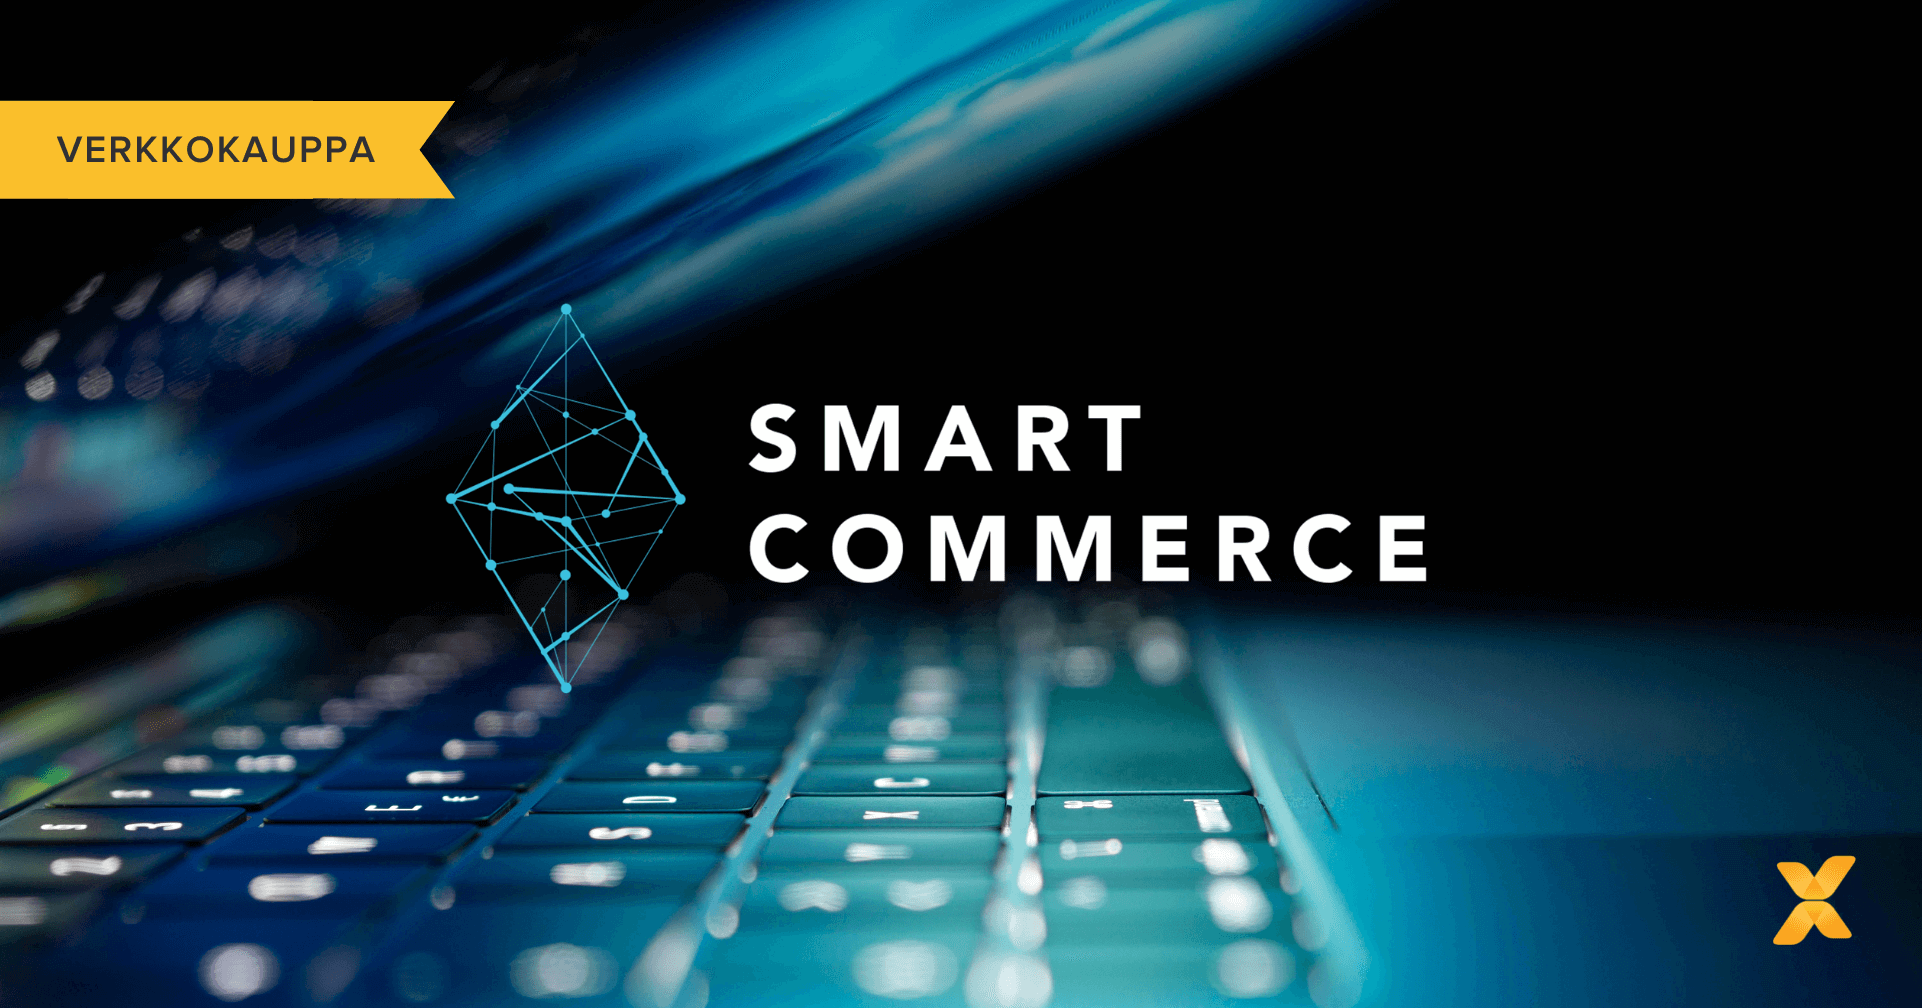 Smart Commerce -tapahtuman kohokohdat